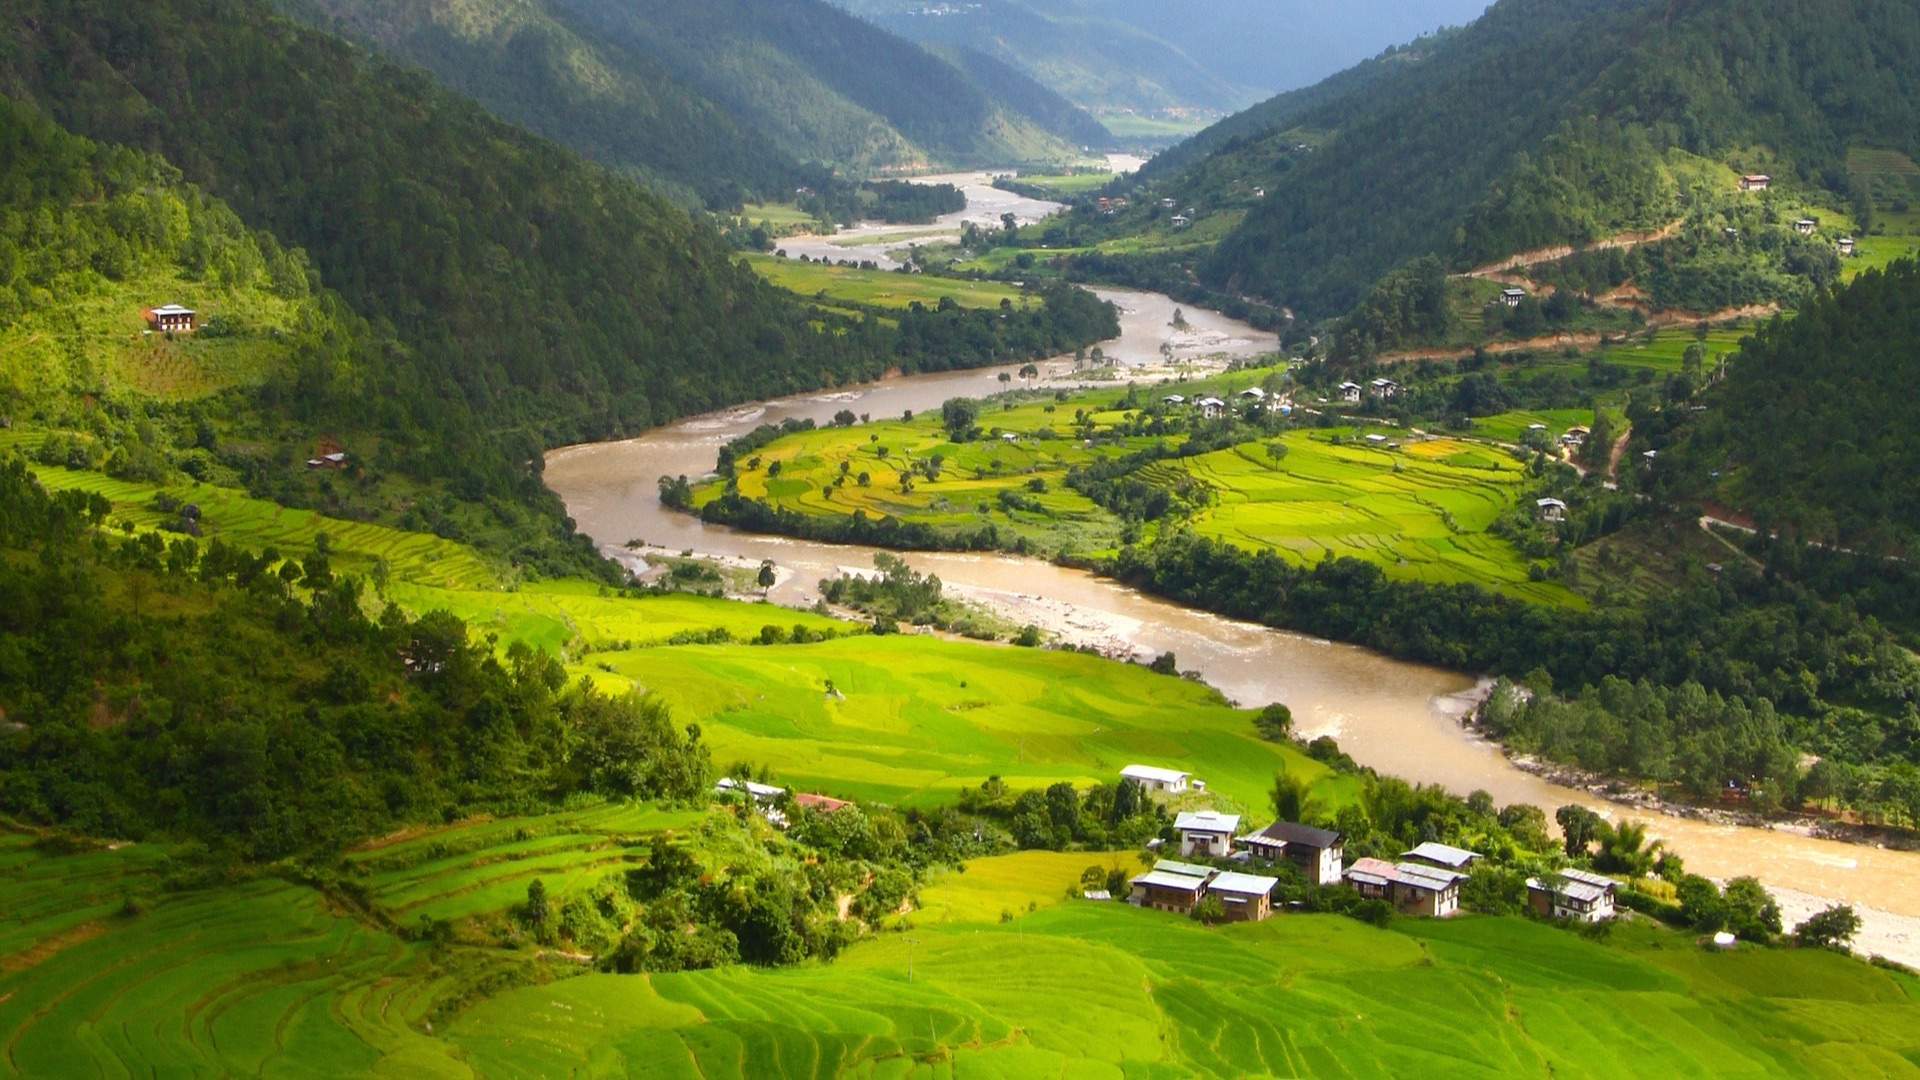 Photograph Bhutan